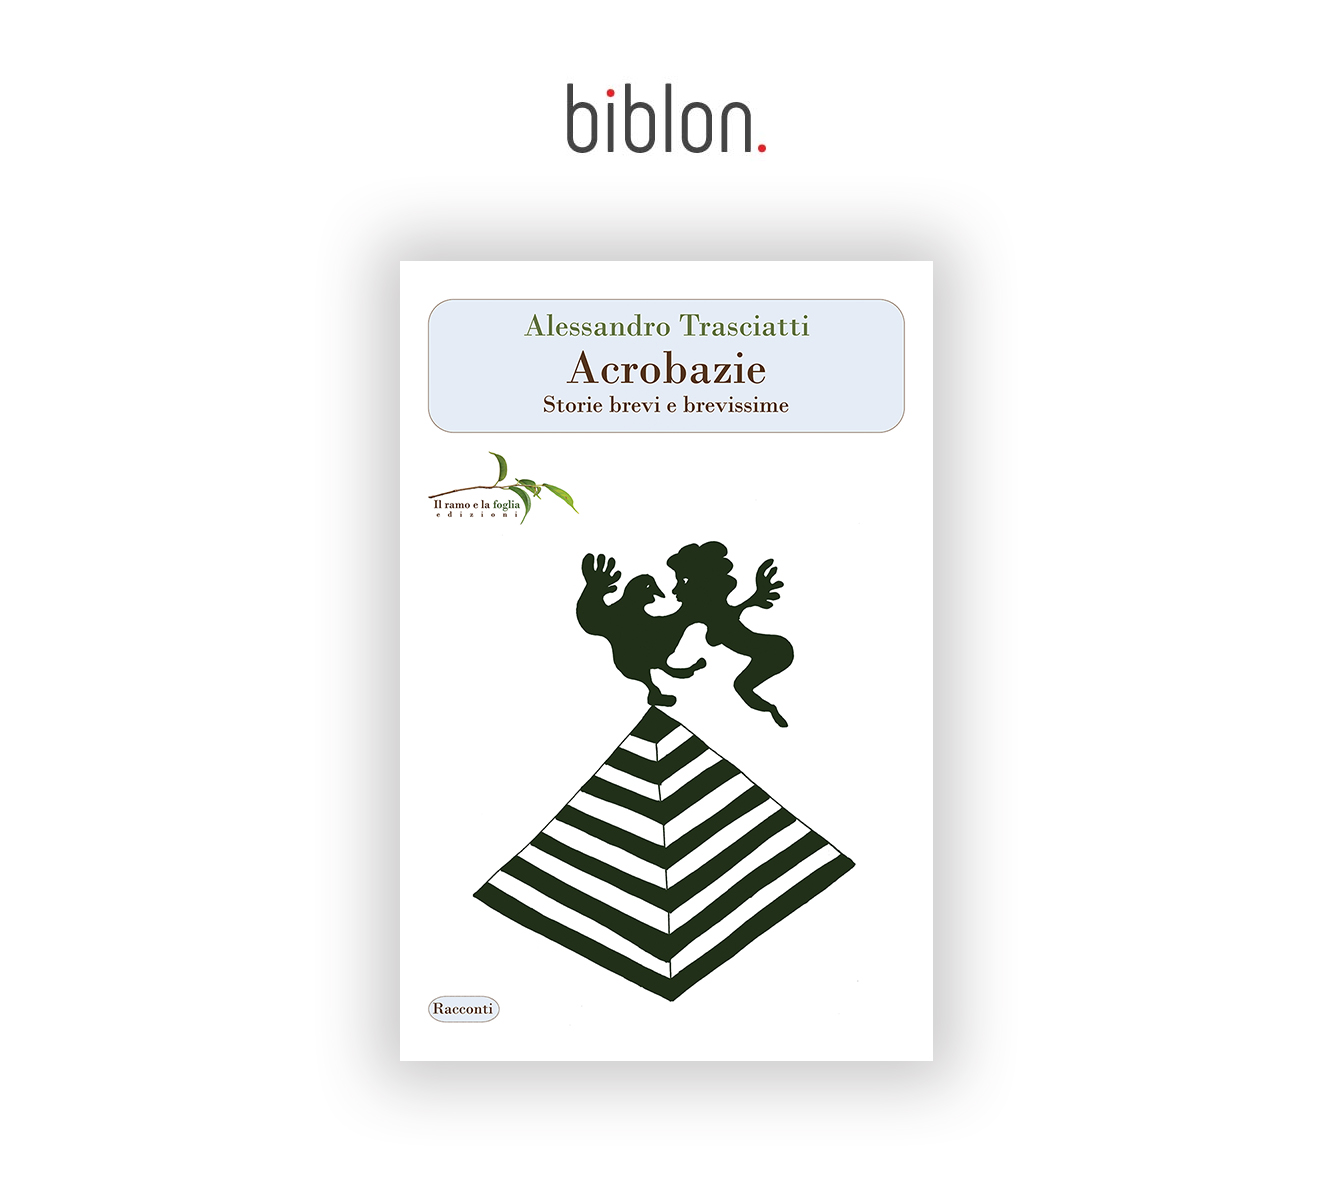 Logo di biblon. e copertina di “Acrobazie”